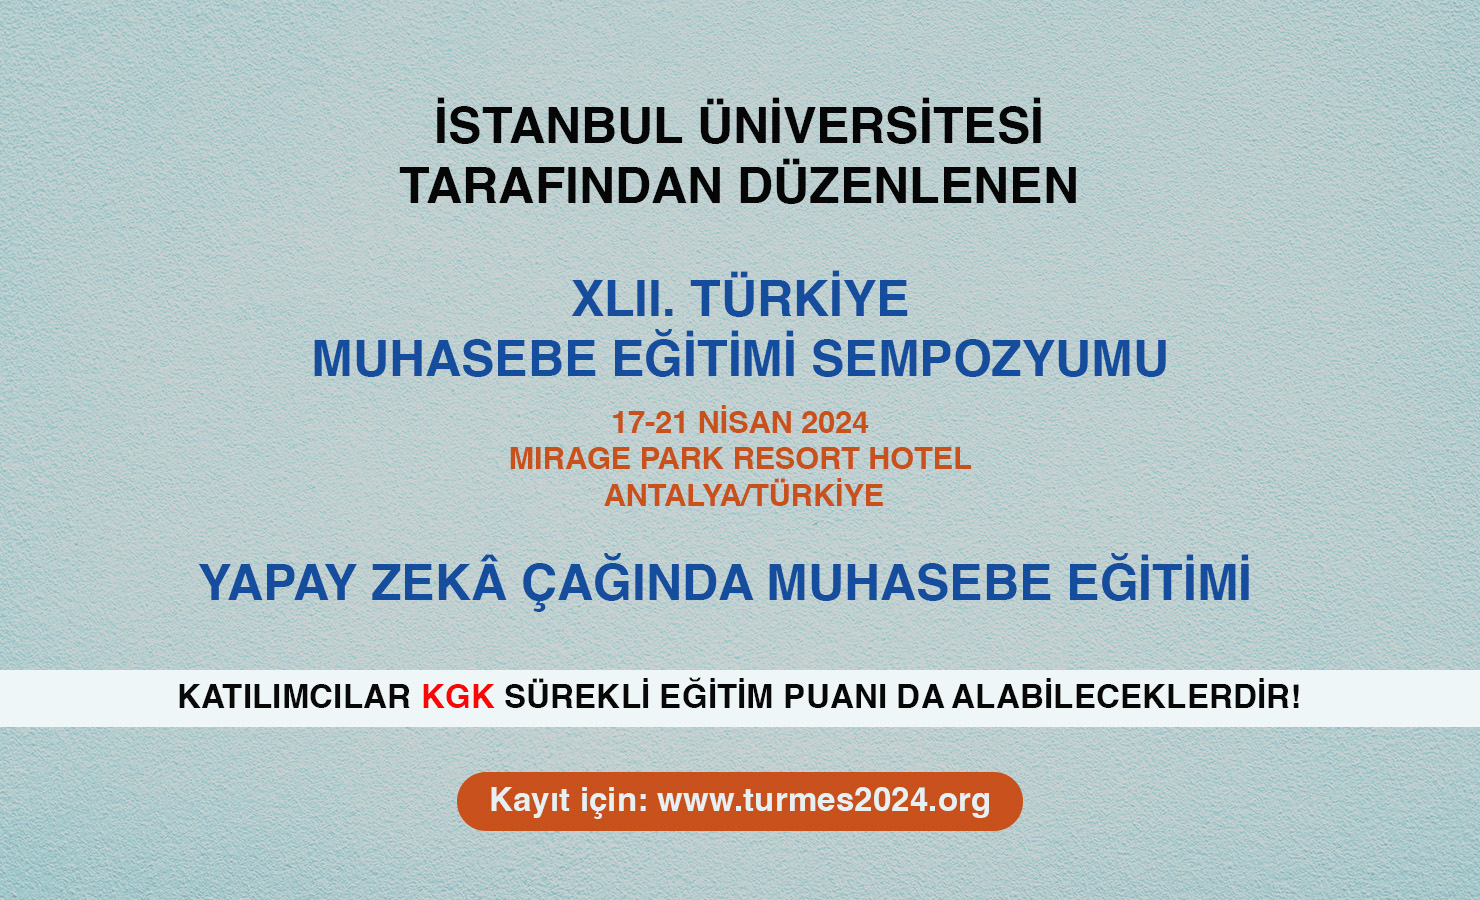 XLII. Türkiye Muhasebe Eğitimi Sempozyumu, 17-21 Nisan 2024